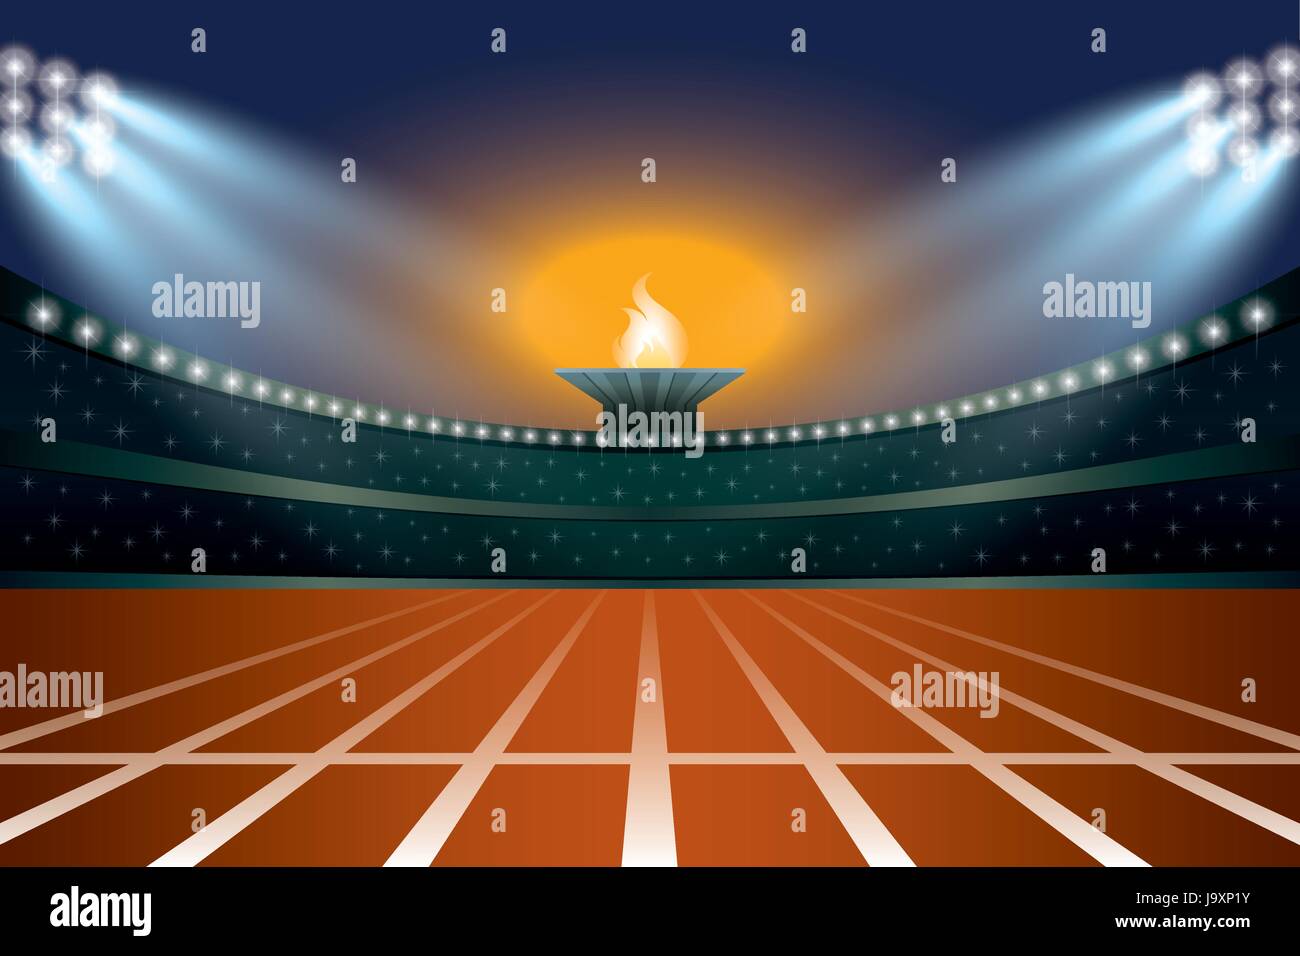 Leichtathletik-Stadion mit Track im allgemeinen vorderen Nachtansicht. Zeremonie Veranstaltung Athleten auf Fackel-Hintergrund. Vektor-Illustration Stock Vektor